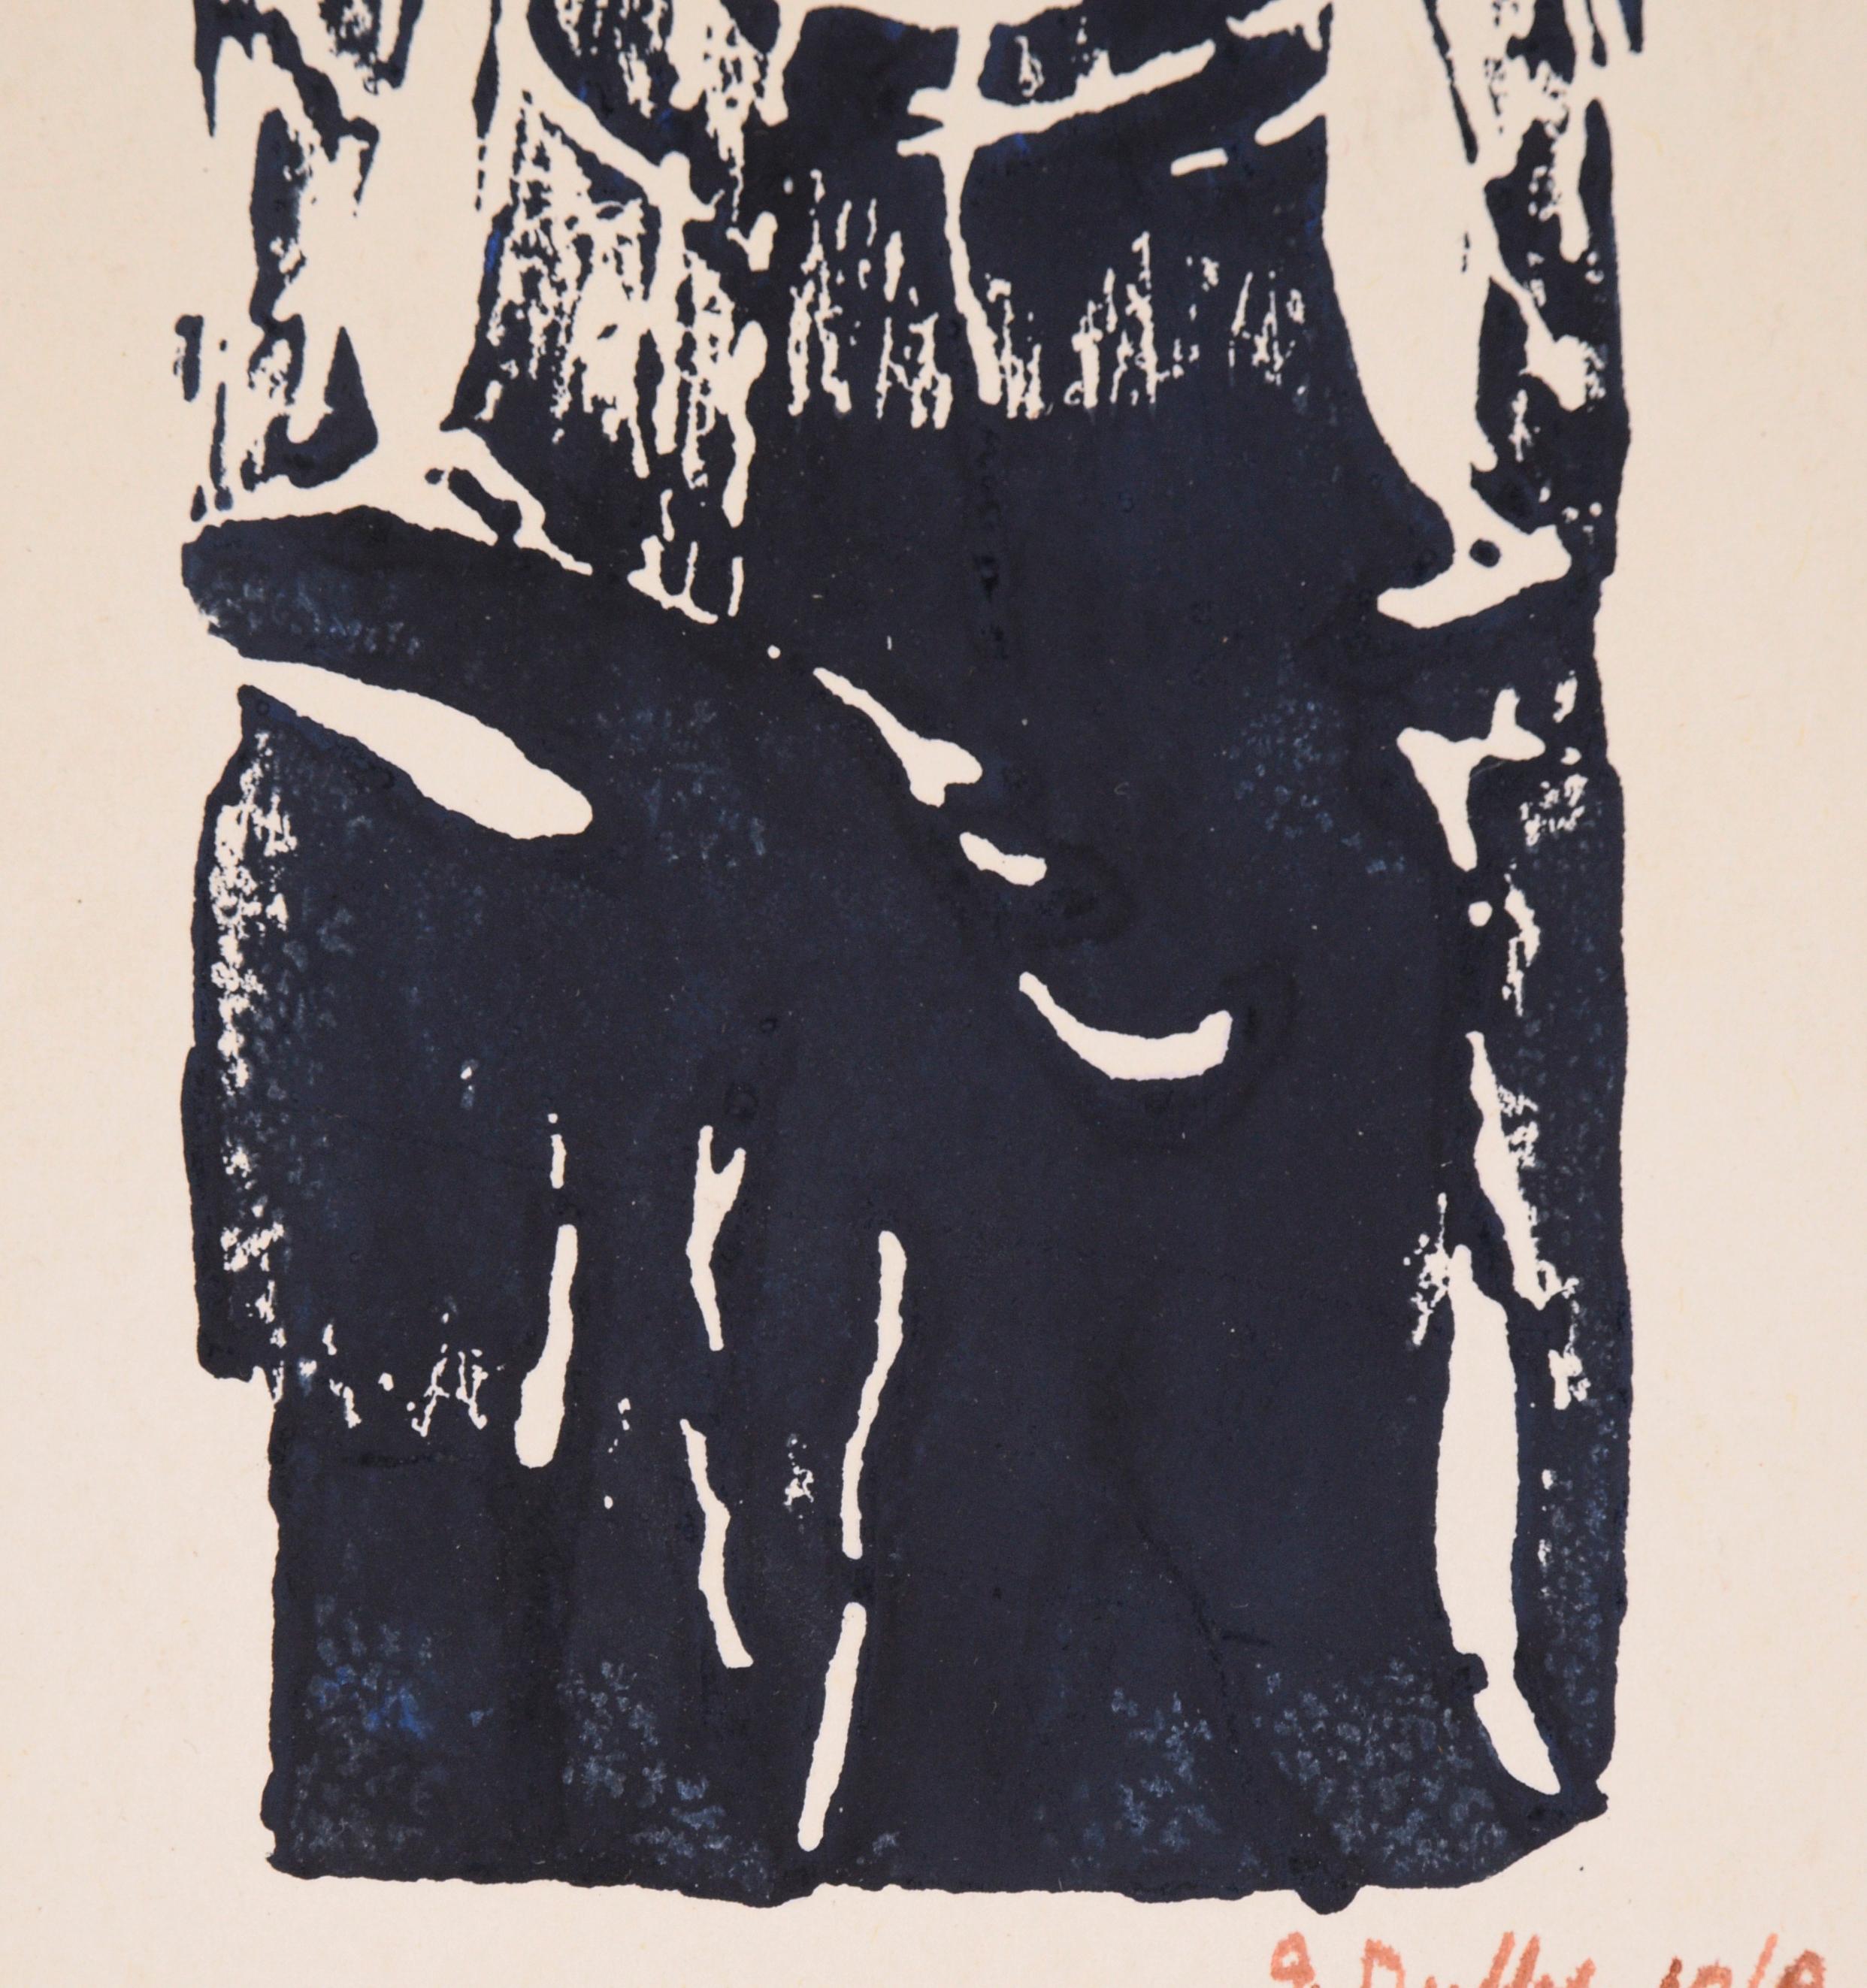 Gravure sur bois d'une femme par J. Duffy (américain, 20e siècle). Le sujet fixe directement le spectateur, créant une composition à la fois fascinante et délicate. L'encre semble être noire, mais elle est en fait d'un bleu très foncé. Cet